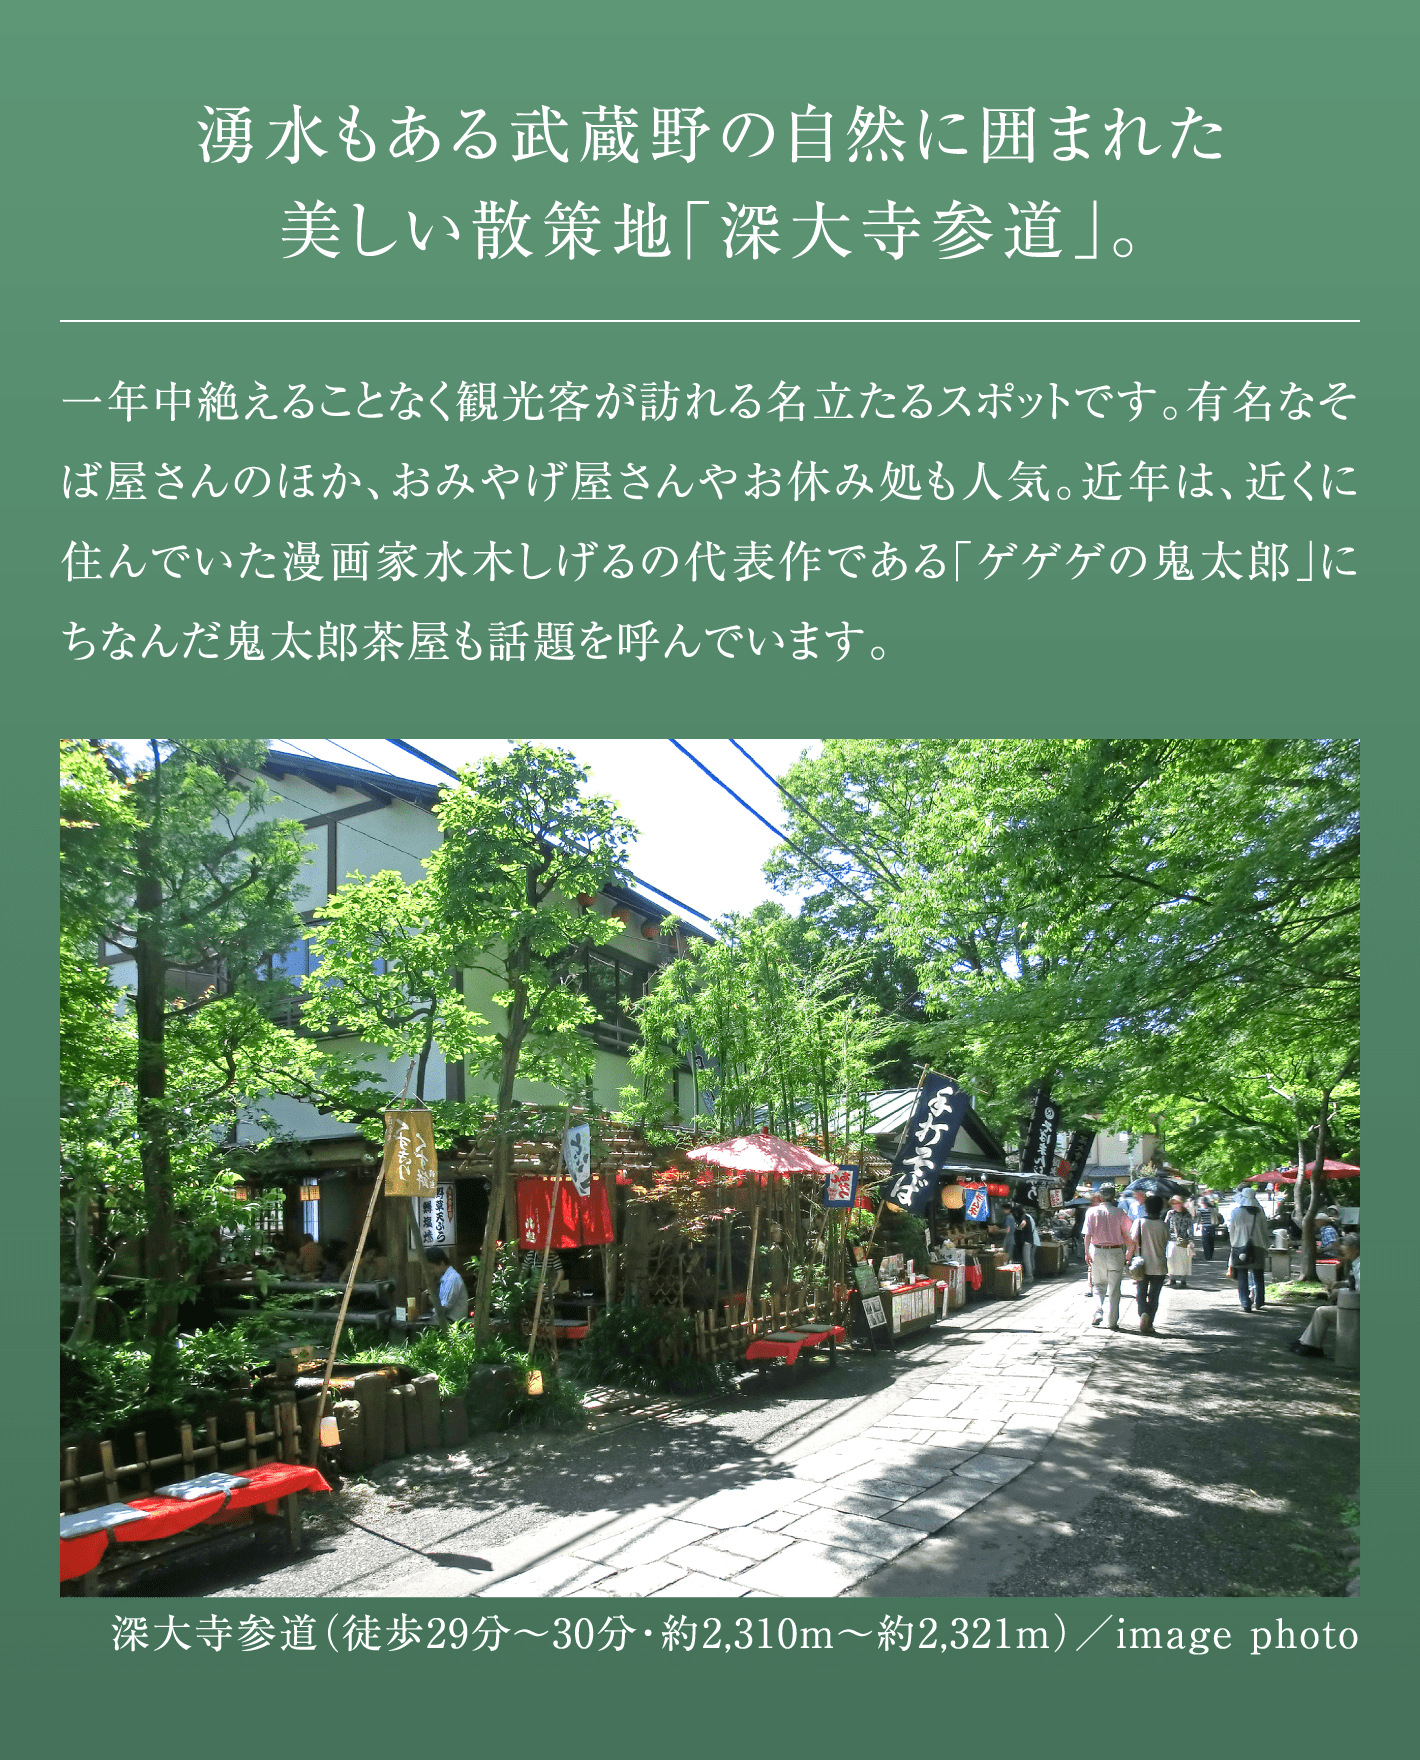 湧水もある武蔵野の自然に囲まれた美しい散策地「深大寺参道」。